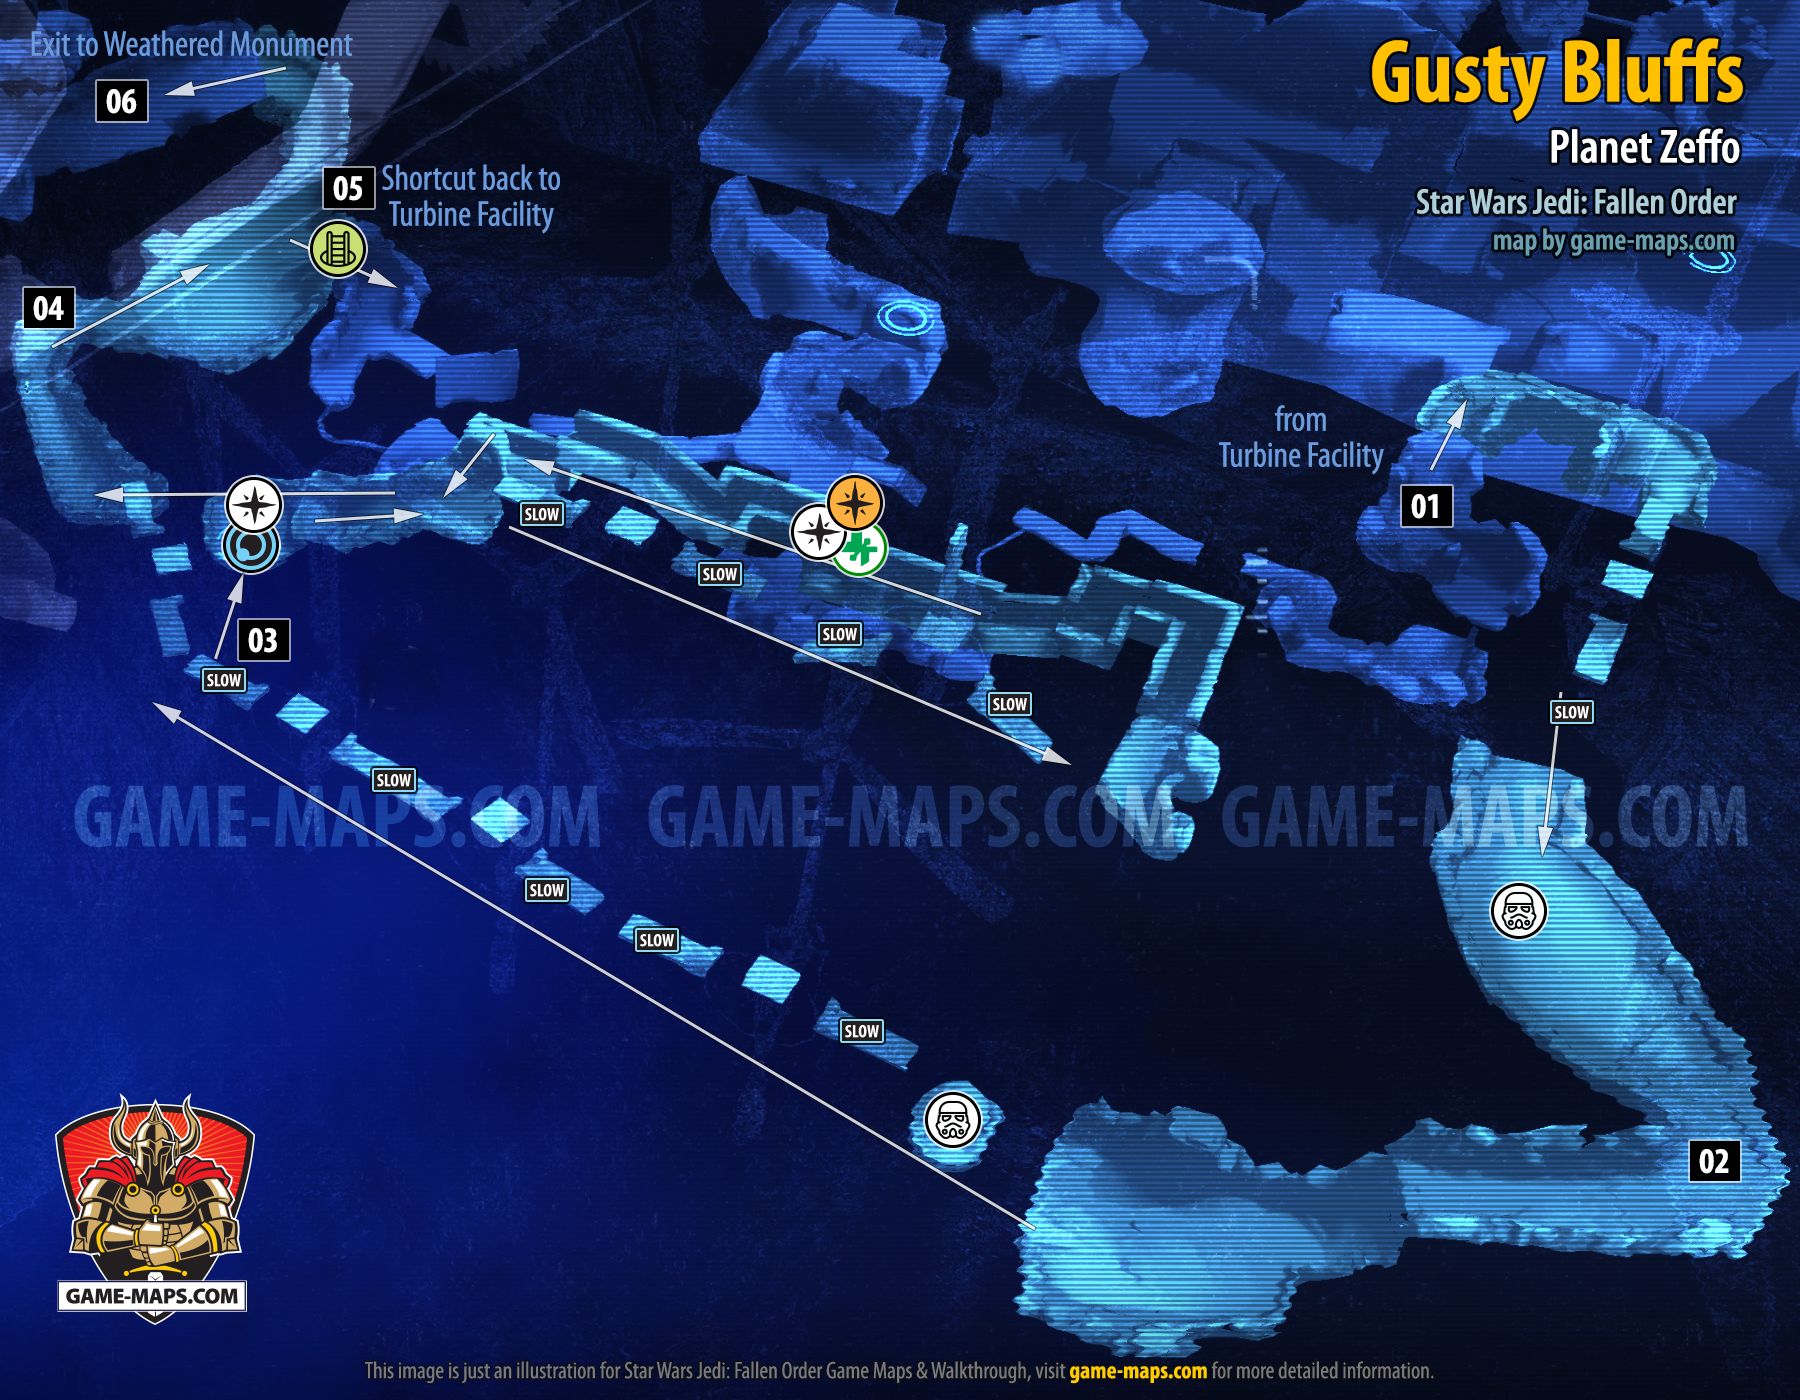 Gusty Bluffs Map, Planet Zeffo for Star Wars Jedi Fallen Order